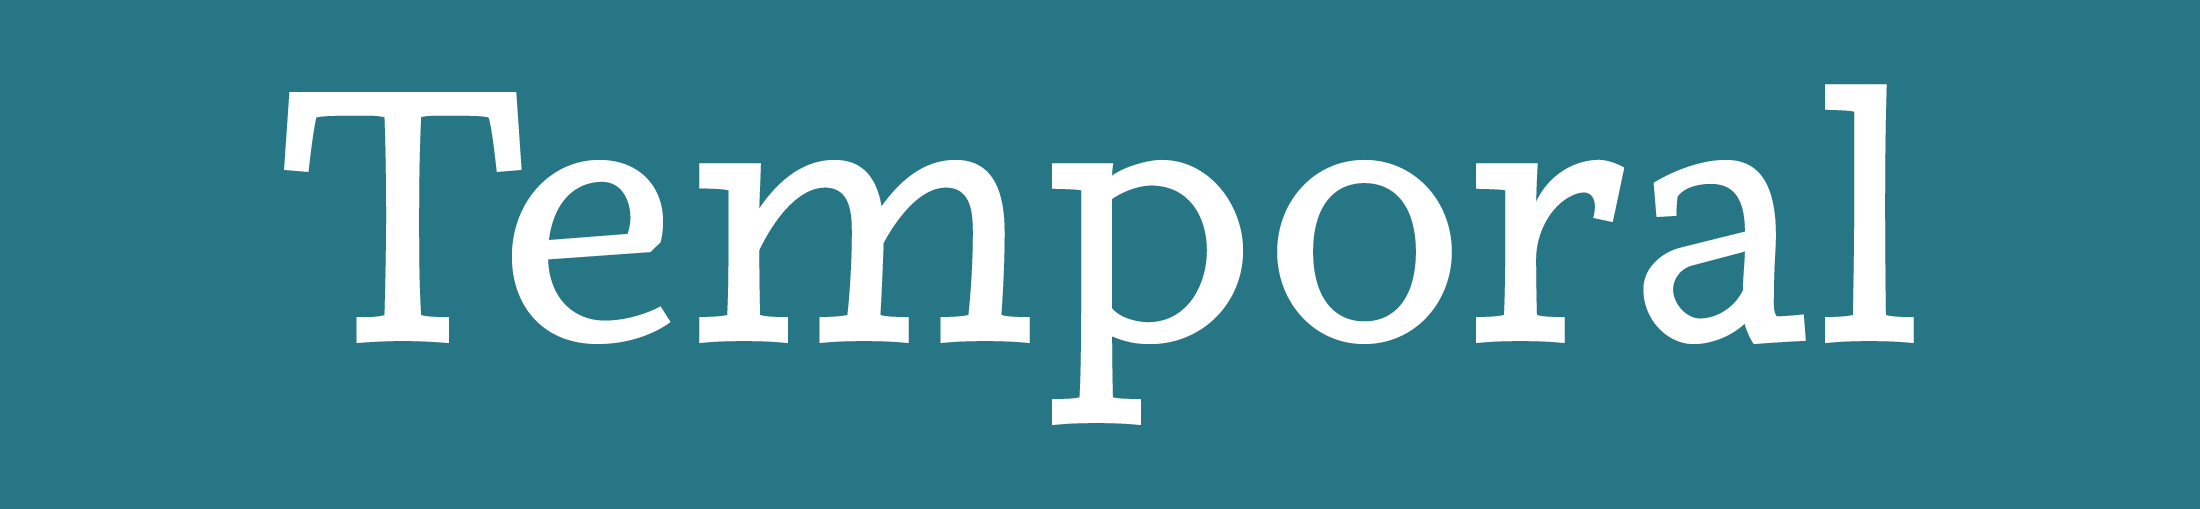 Temporal Font Banner